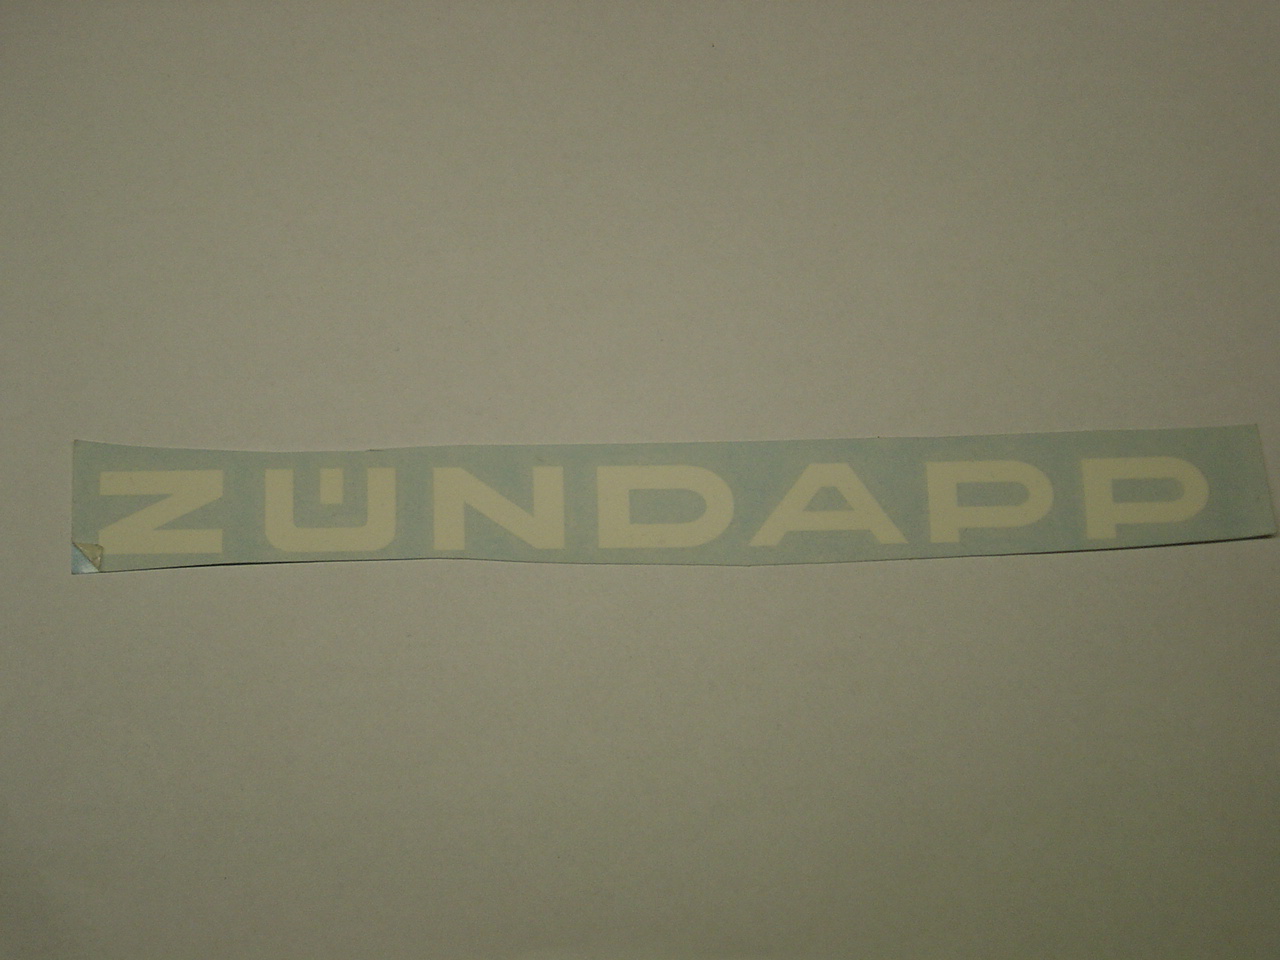 Sticker Lawn mower " Zundapp "